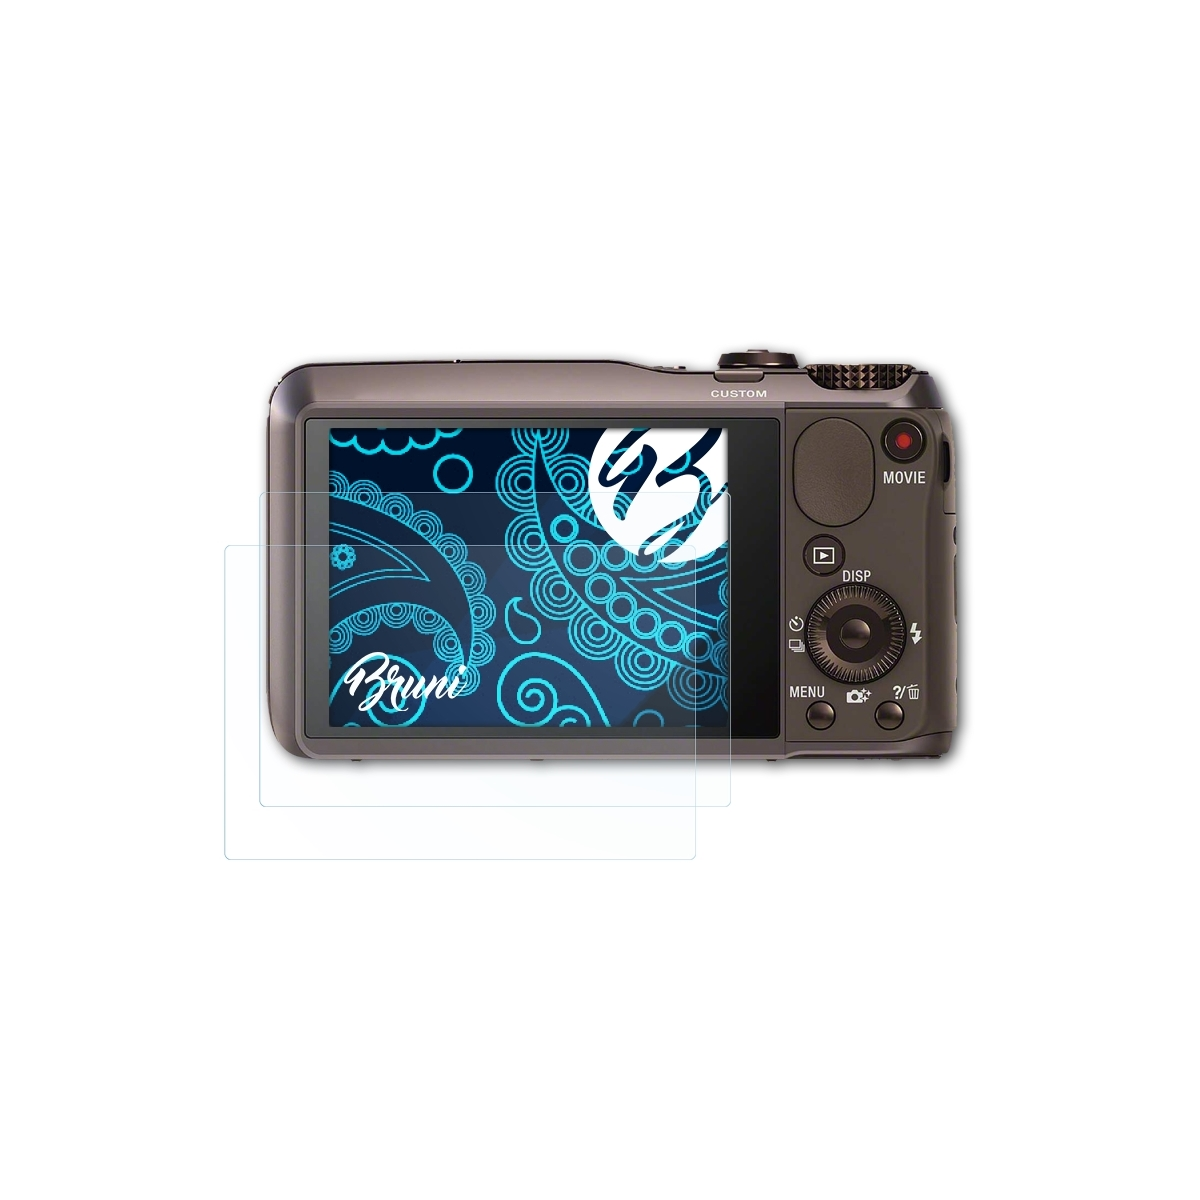 BRUNI 2x Basics-Clear DSC-HX20V) Sony Schutzfolie(für